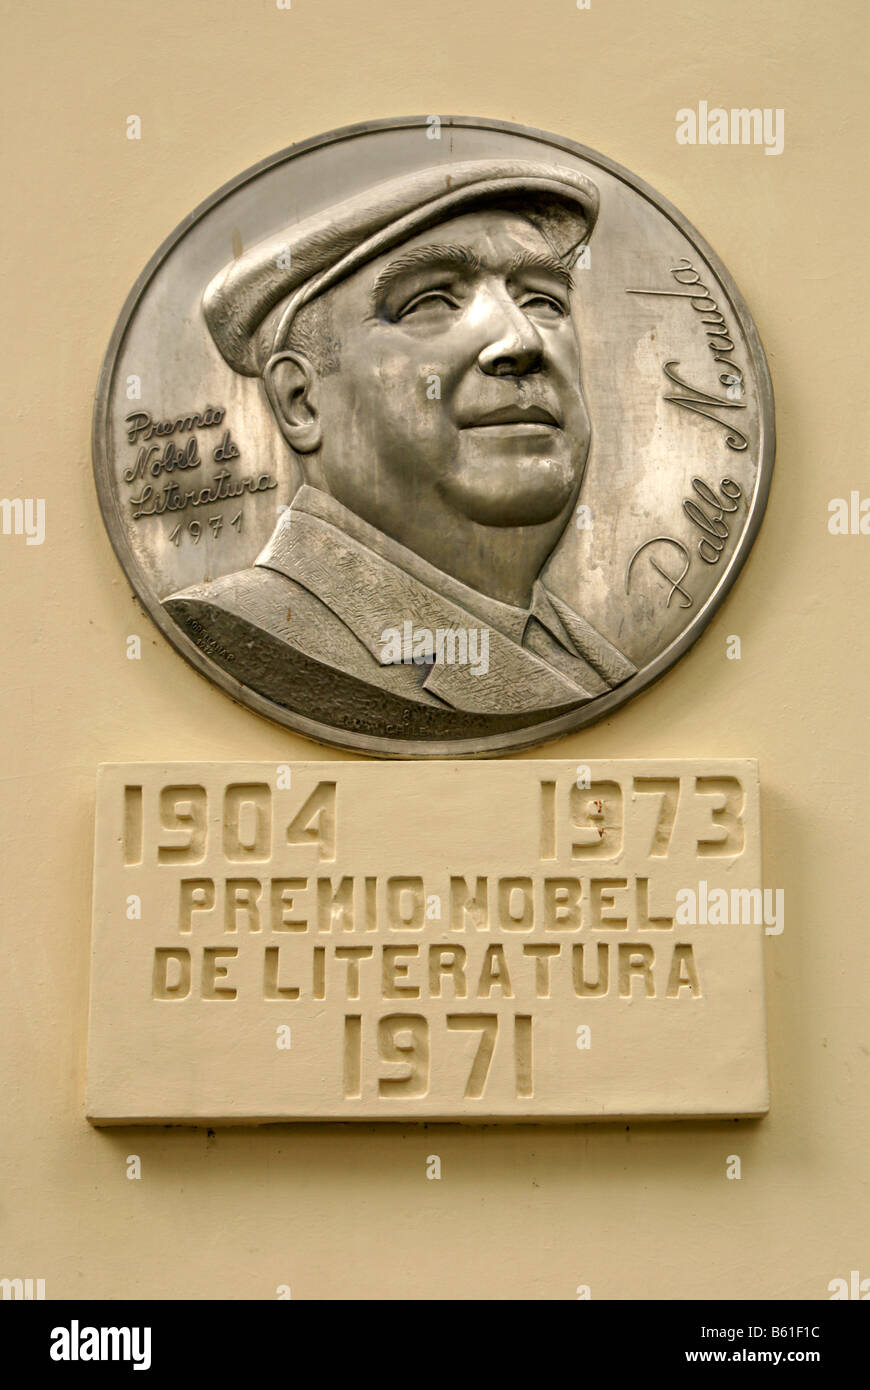 Monument honoring Chilean poet Pablo Neruda in Parque Cuscatlan, San Salvador, El Salvador Stock Photo